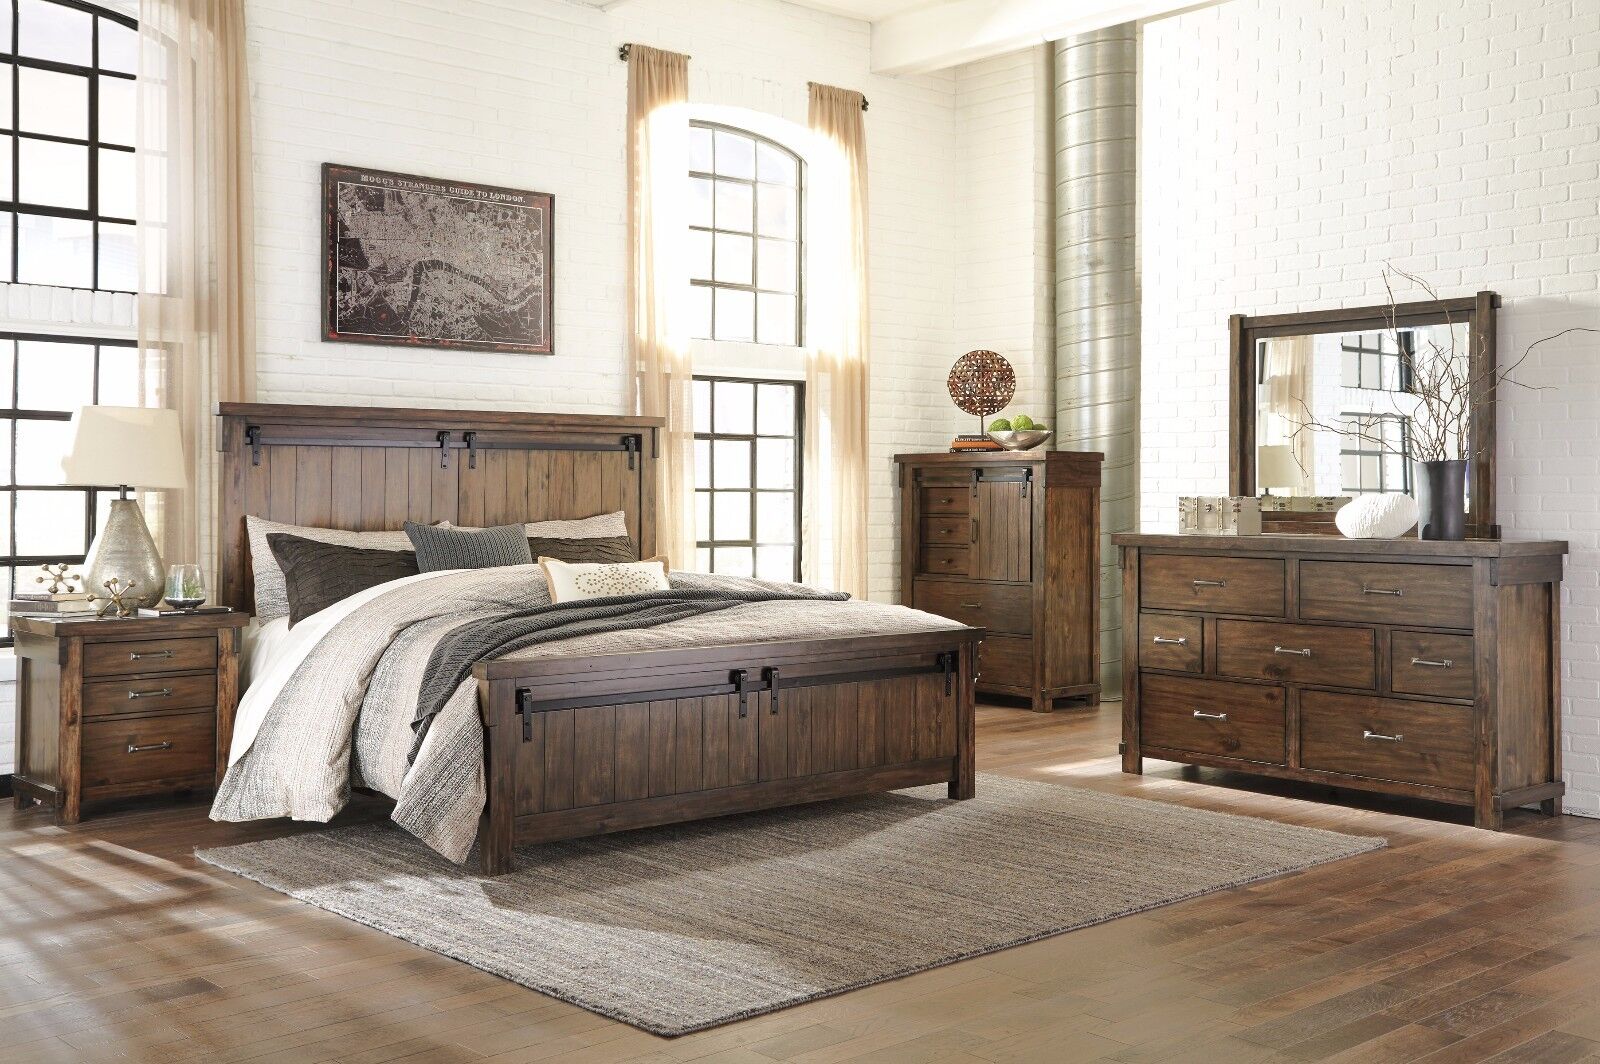 Ashley Furniture Lakeleigh Queen 6 Piece Bedroom Set